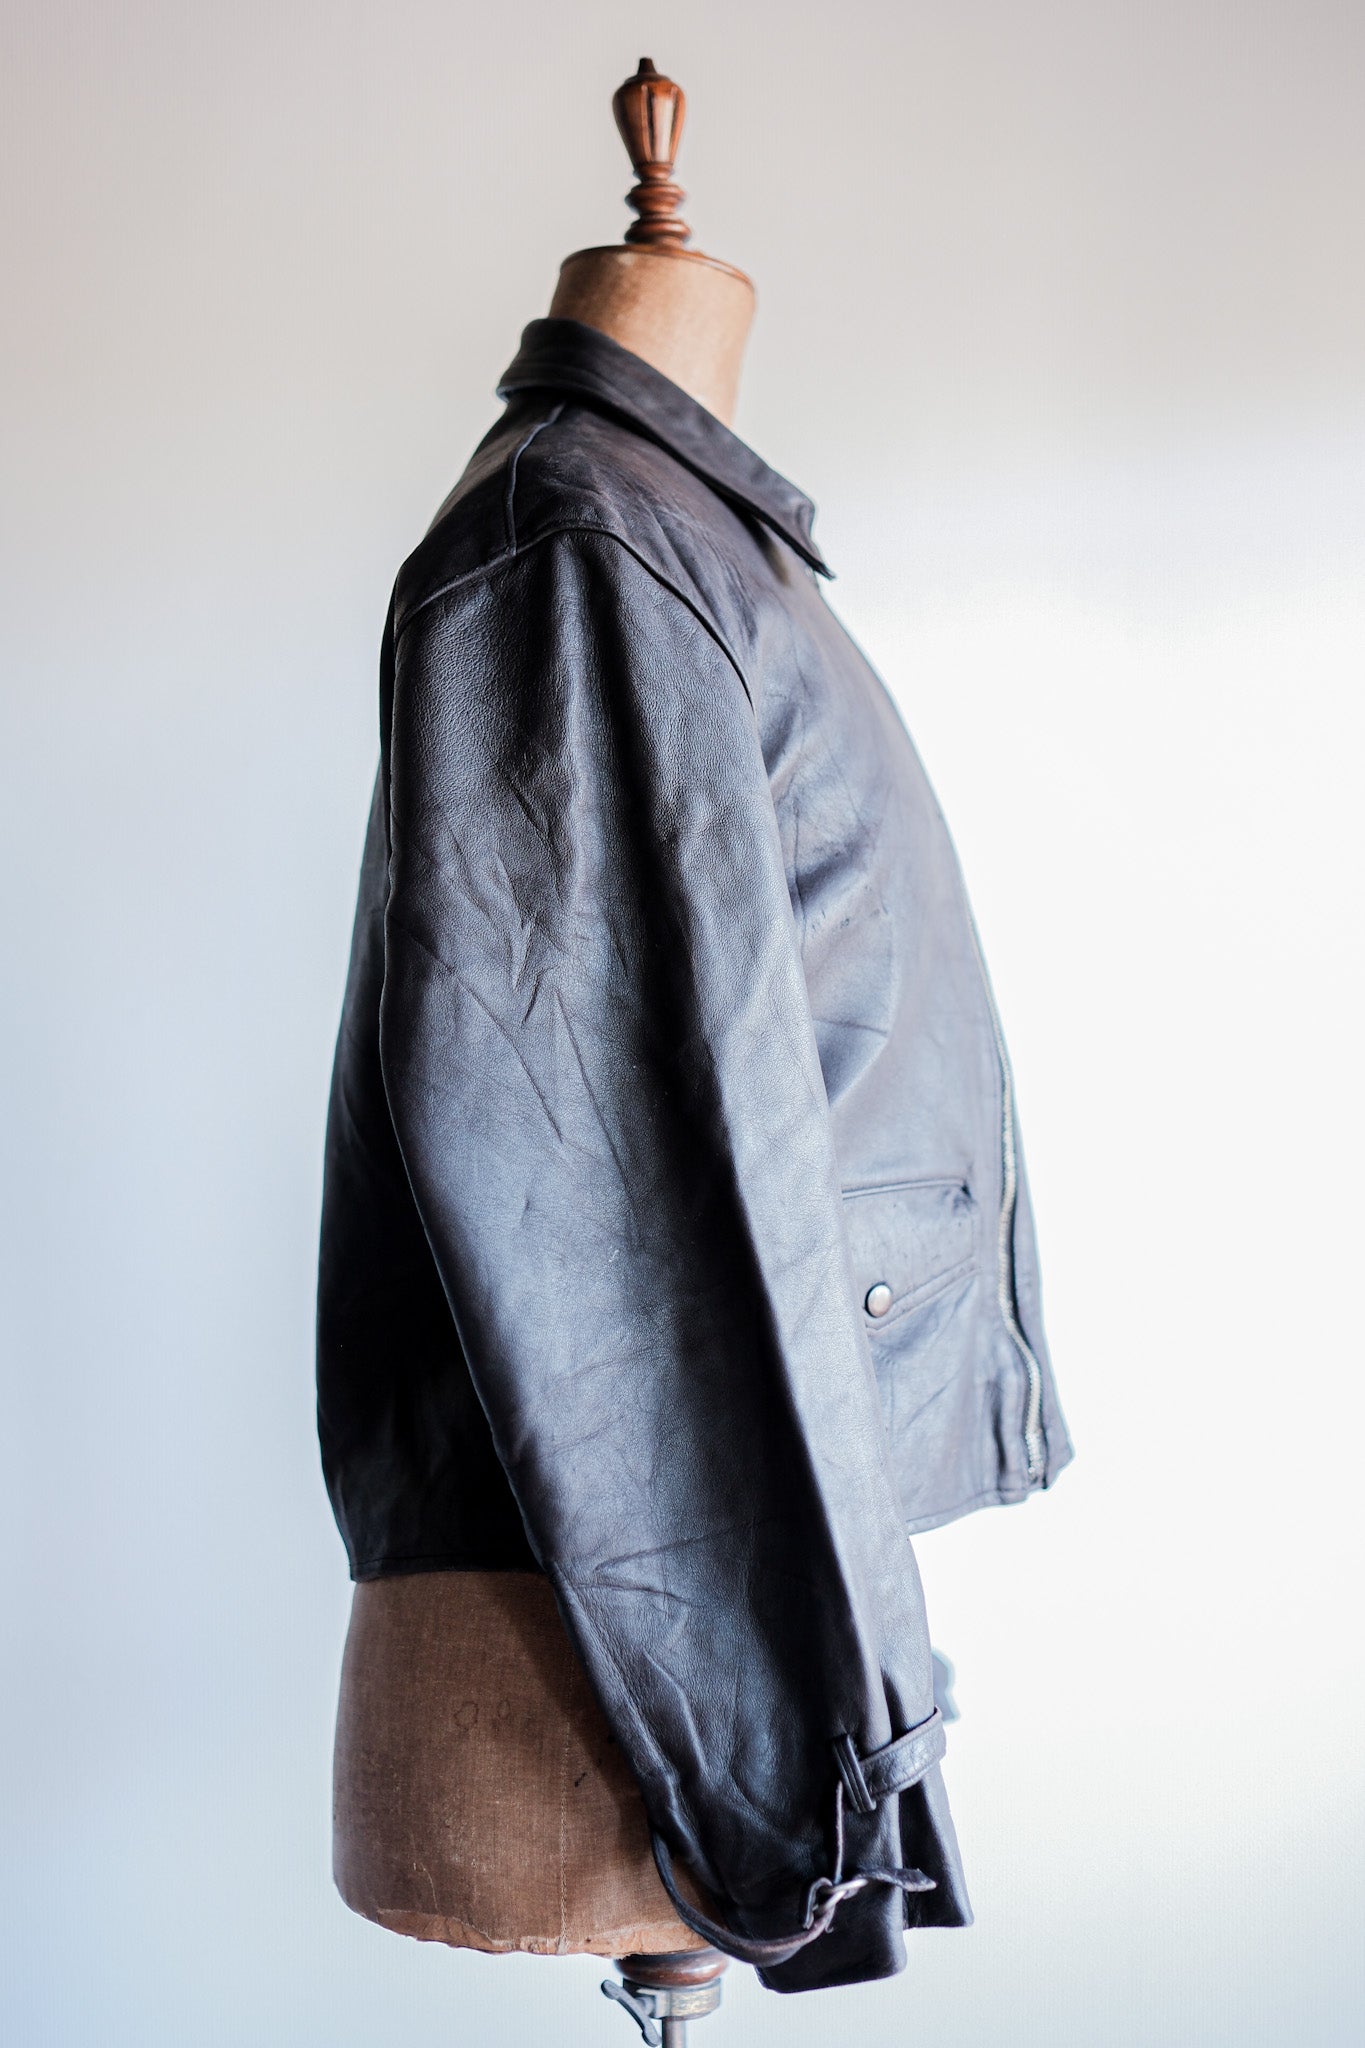 [~ 40 '] 프랑스 빈티지 브라운 가죽 사이클리스트 재킷 "수정"